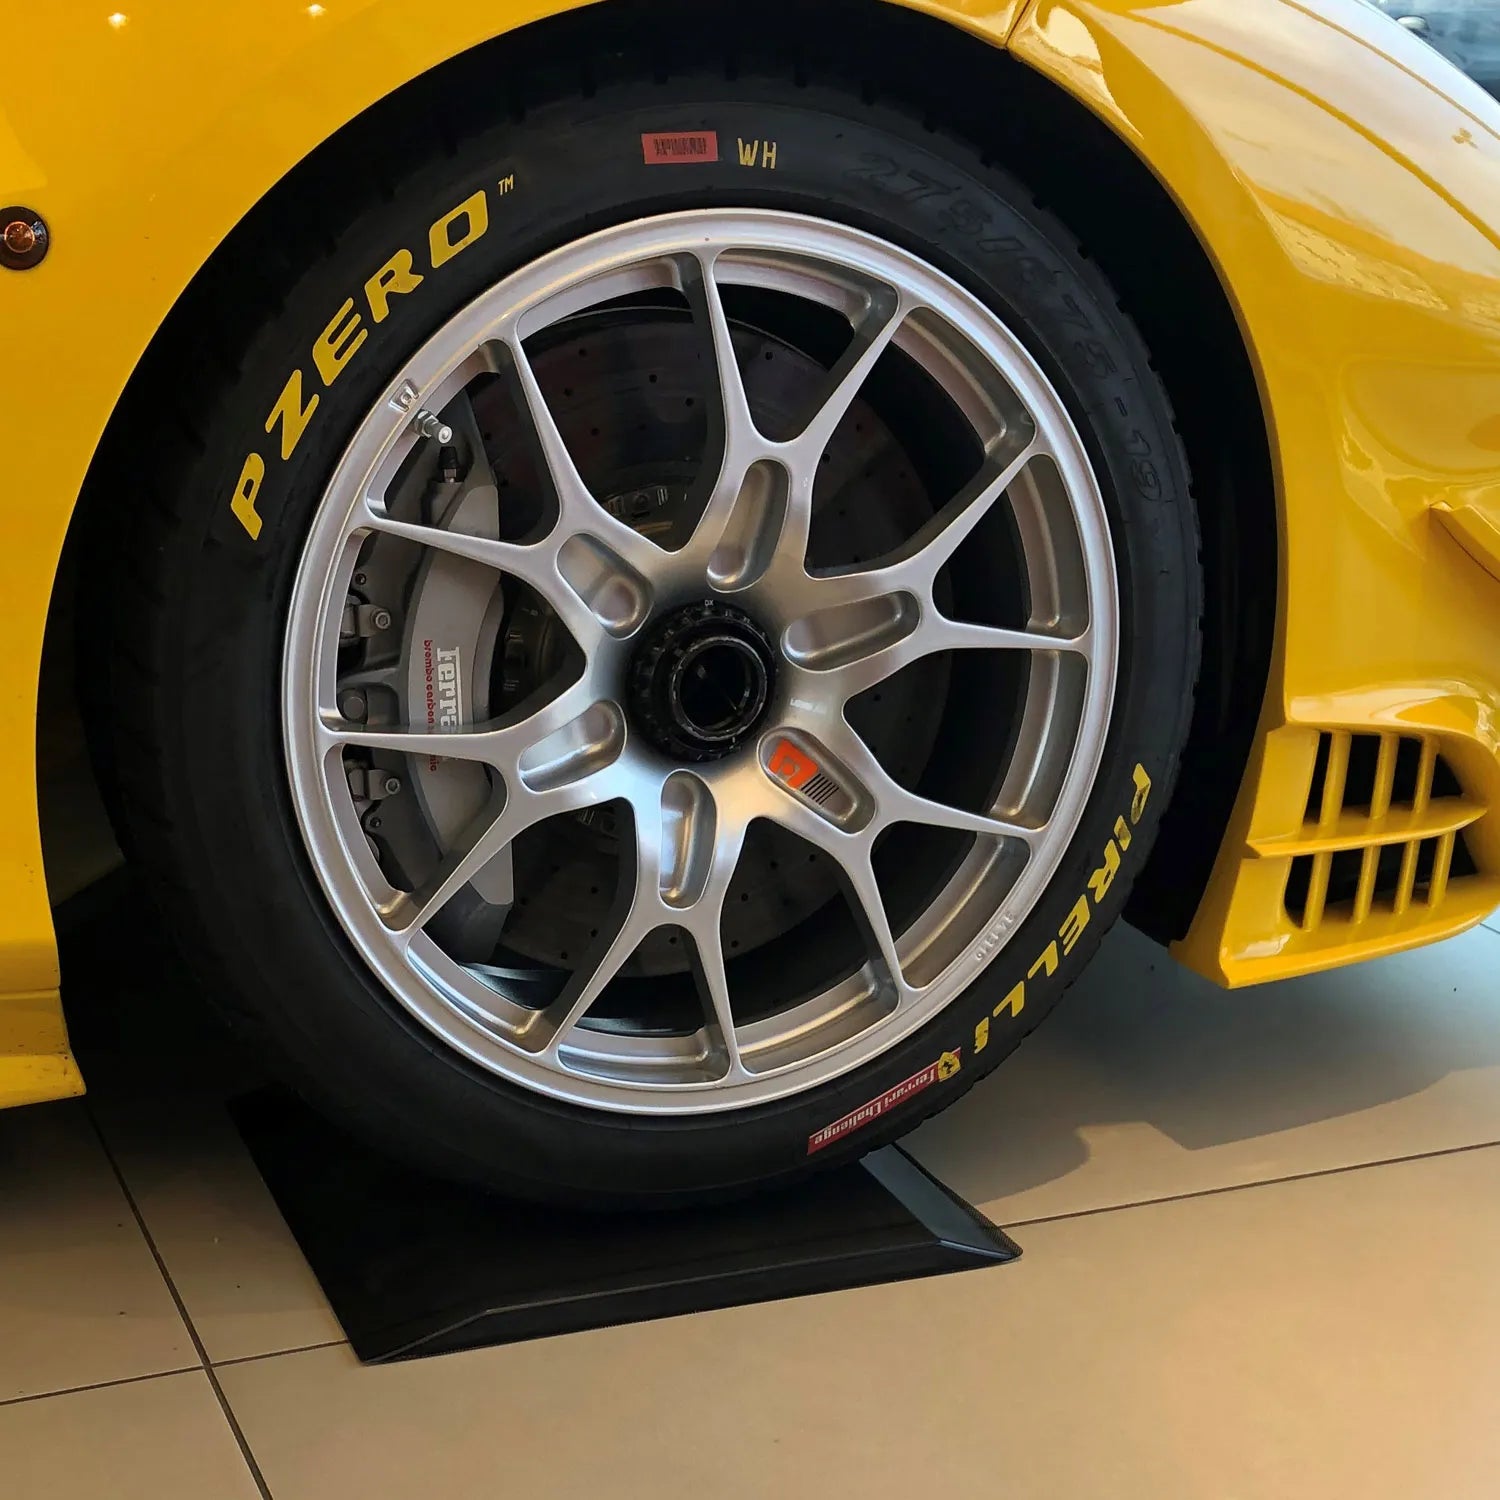 Gelber Ferrari steht auf einer schwarten Reifenwiege aus Pu-Gel.